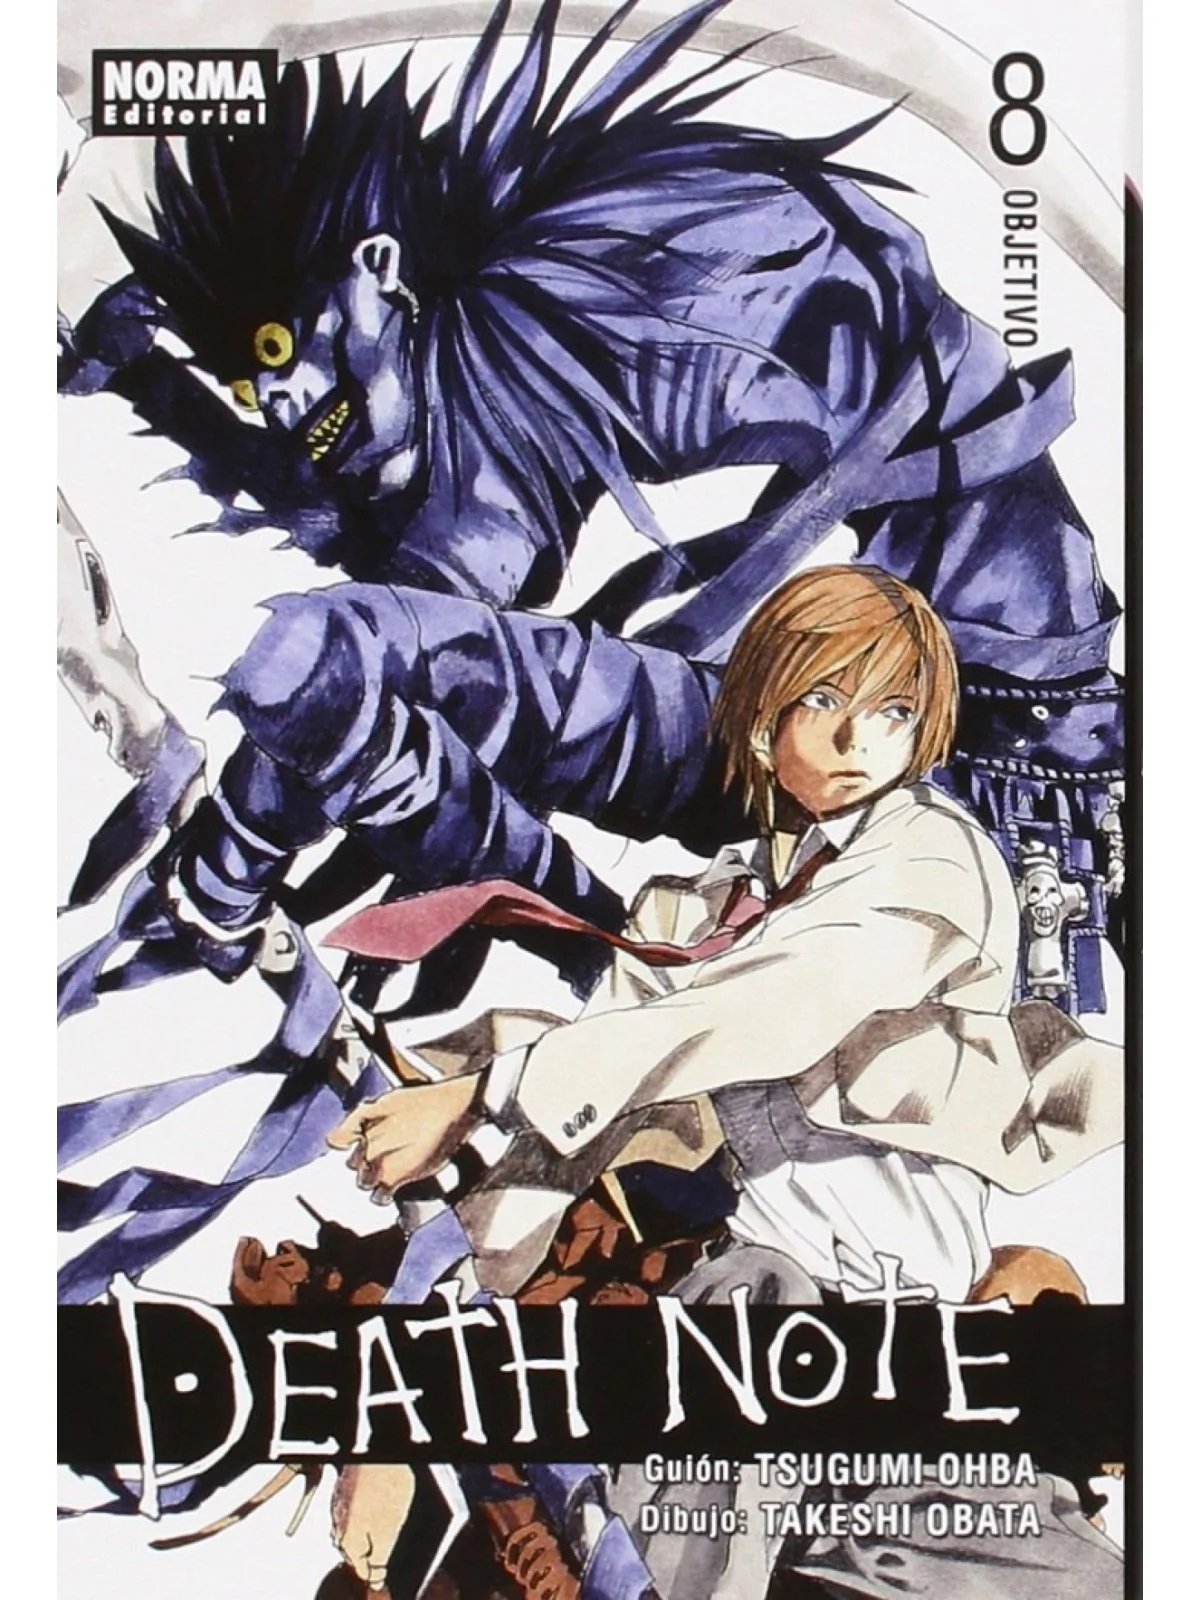 Comprar Death Note barato al mejor precio 6,75 € de Norma Editorial